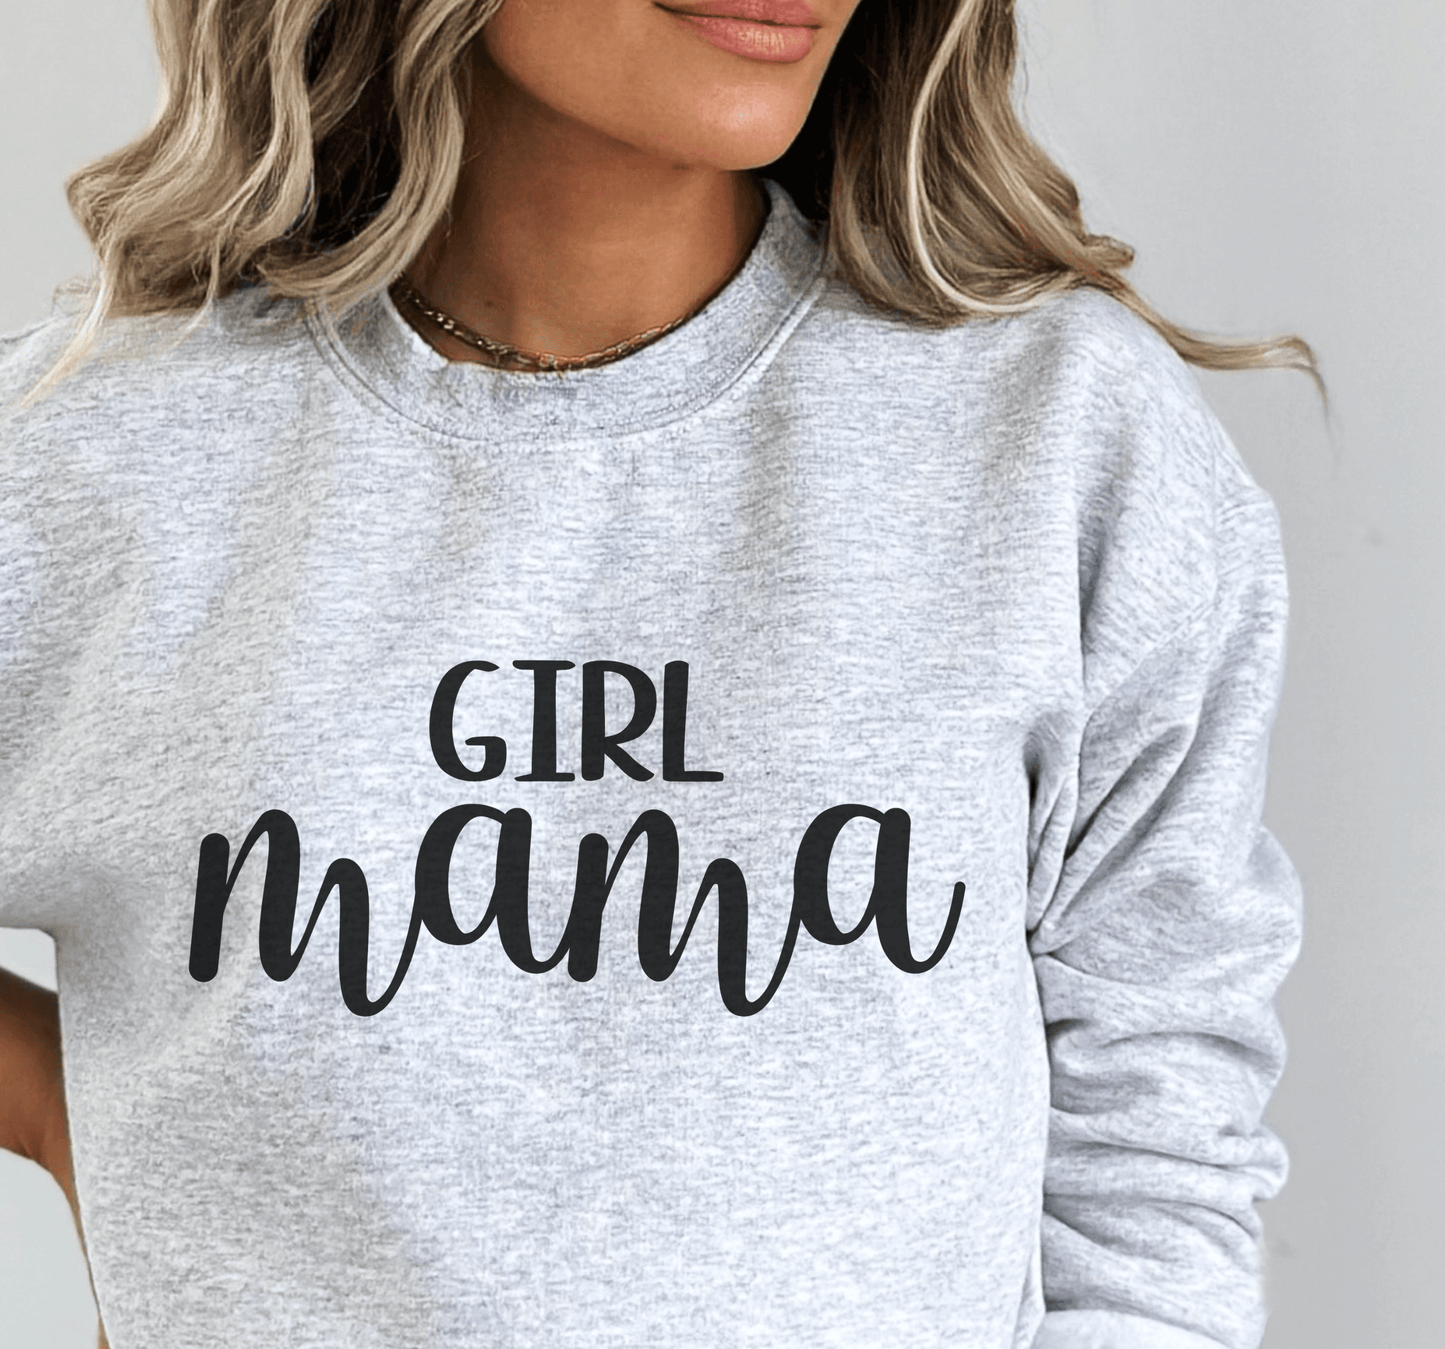 Girl Mama Crewneck Sweatshirt - BentleyBlueCo